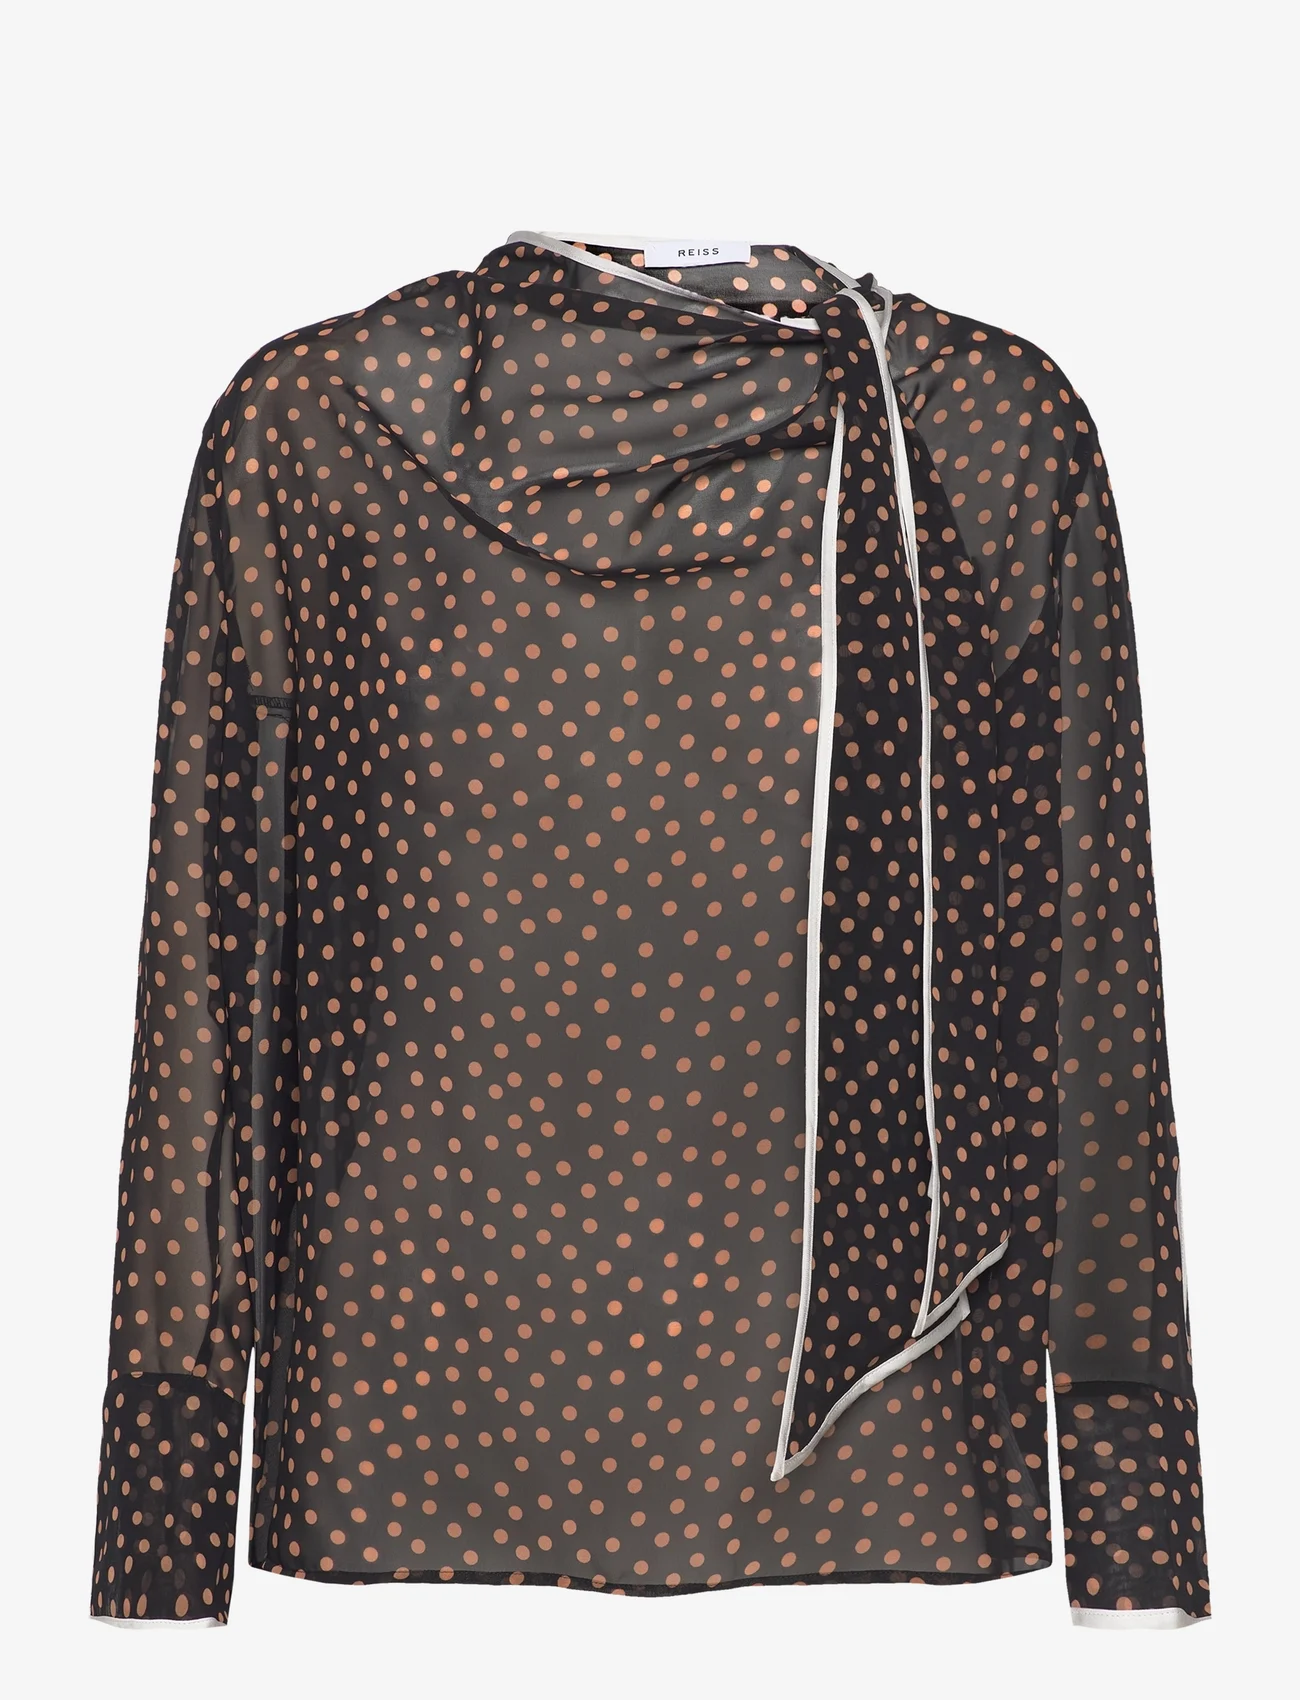 Reiss - NERIN - long-sleeved blouses - black/rust - 0